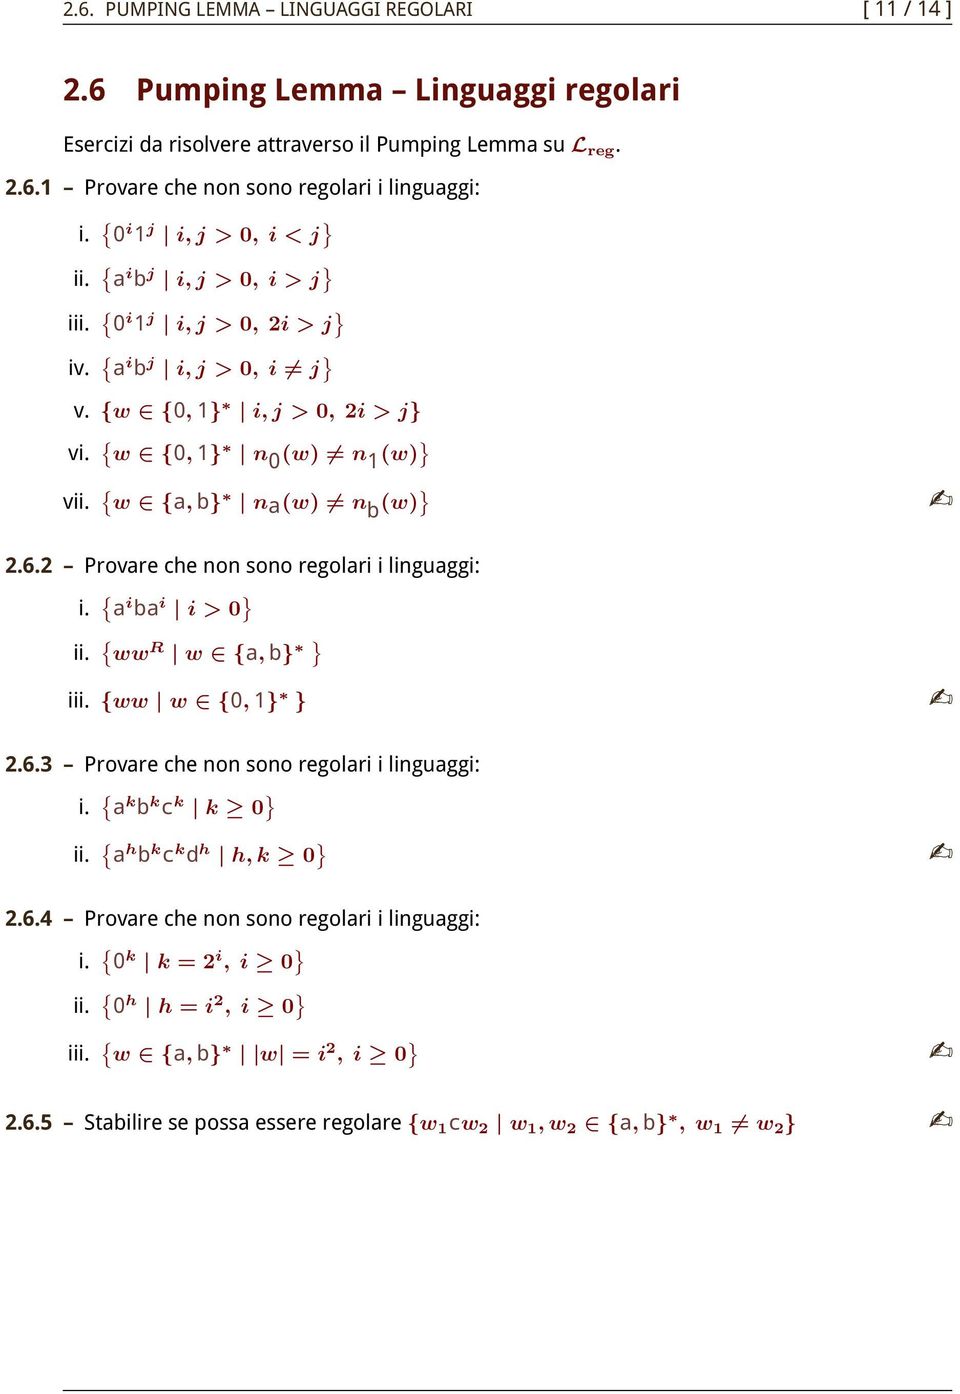 { w {, b} n(w) n b (w) } 2.6.2 Provre che non sono regolri i linguggi: i. { i b i i > 0 } ii. { ww R w {, b} } iii. {ww w {0, 1} } 2.6.3 Provre che non sono regolri i linguggi: i.